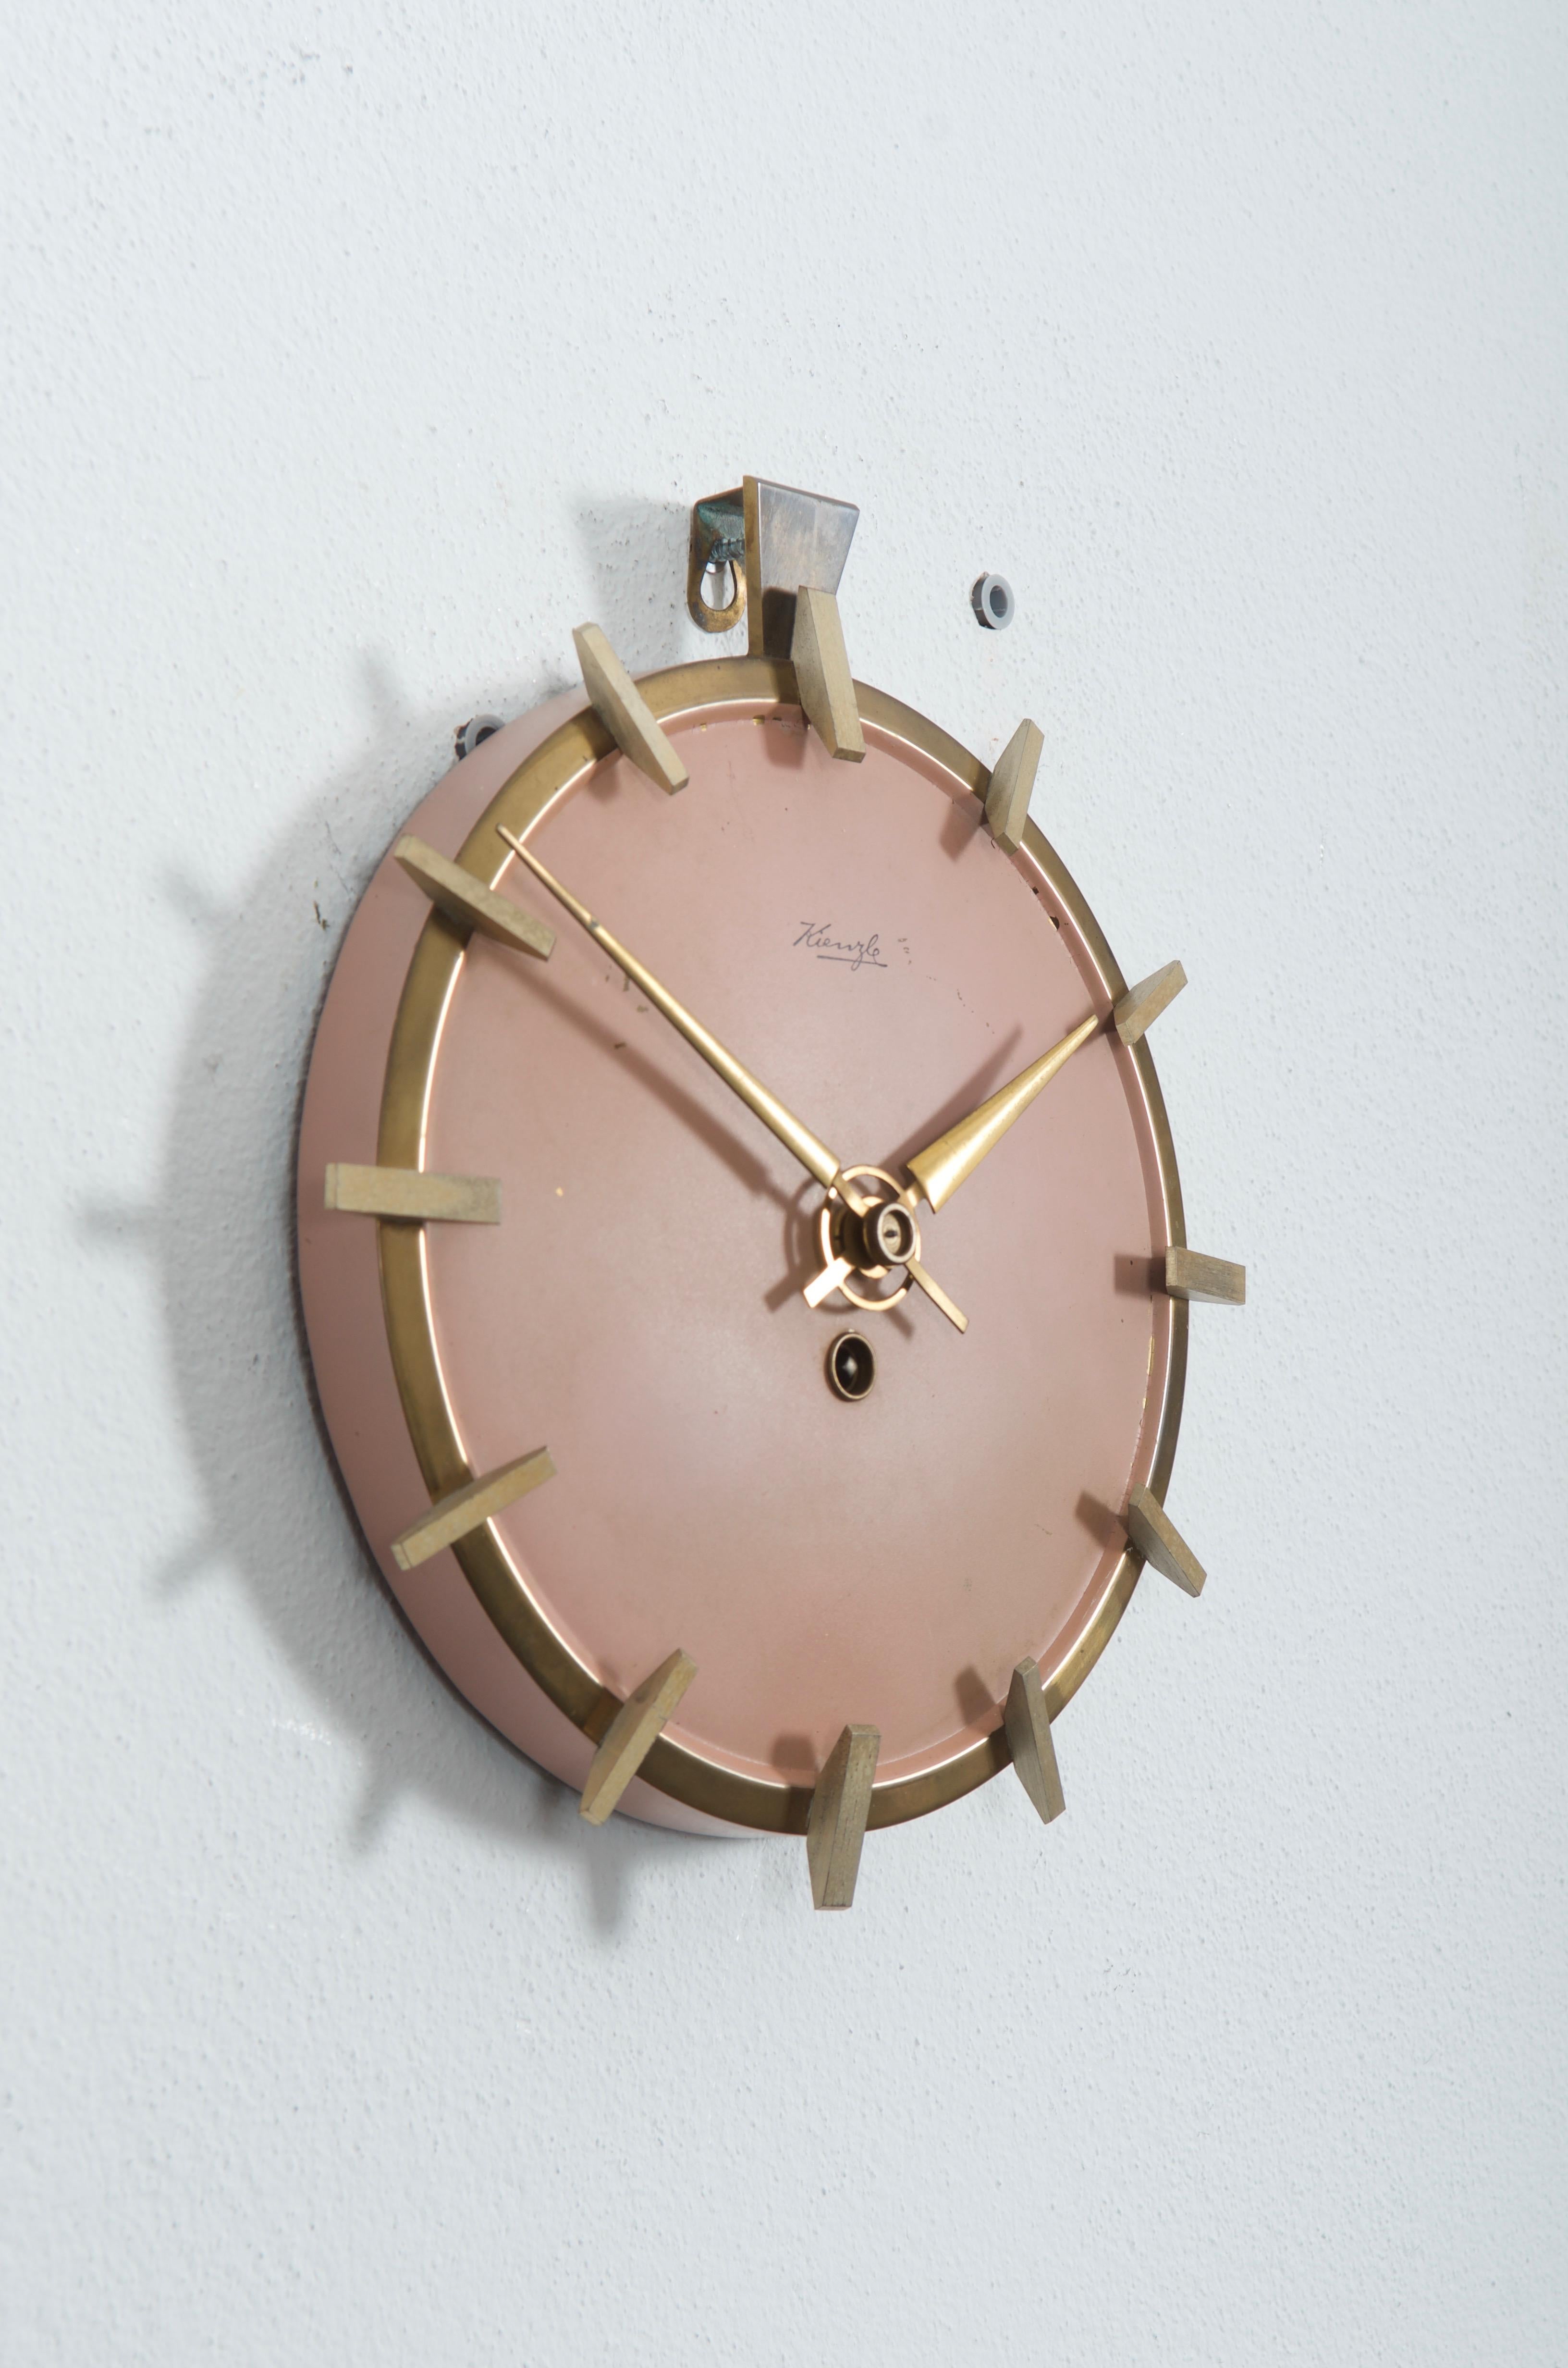 Construction en laiton avec cadran d'horloge peint en rose antique datant du début des années 1950.
Mouvement mécanique d'origine, mais il peut être remplacé par un mouvement à pile AAA sur demande.
Le délai de livraison est d'environ 2 à 3